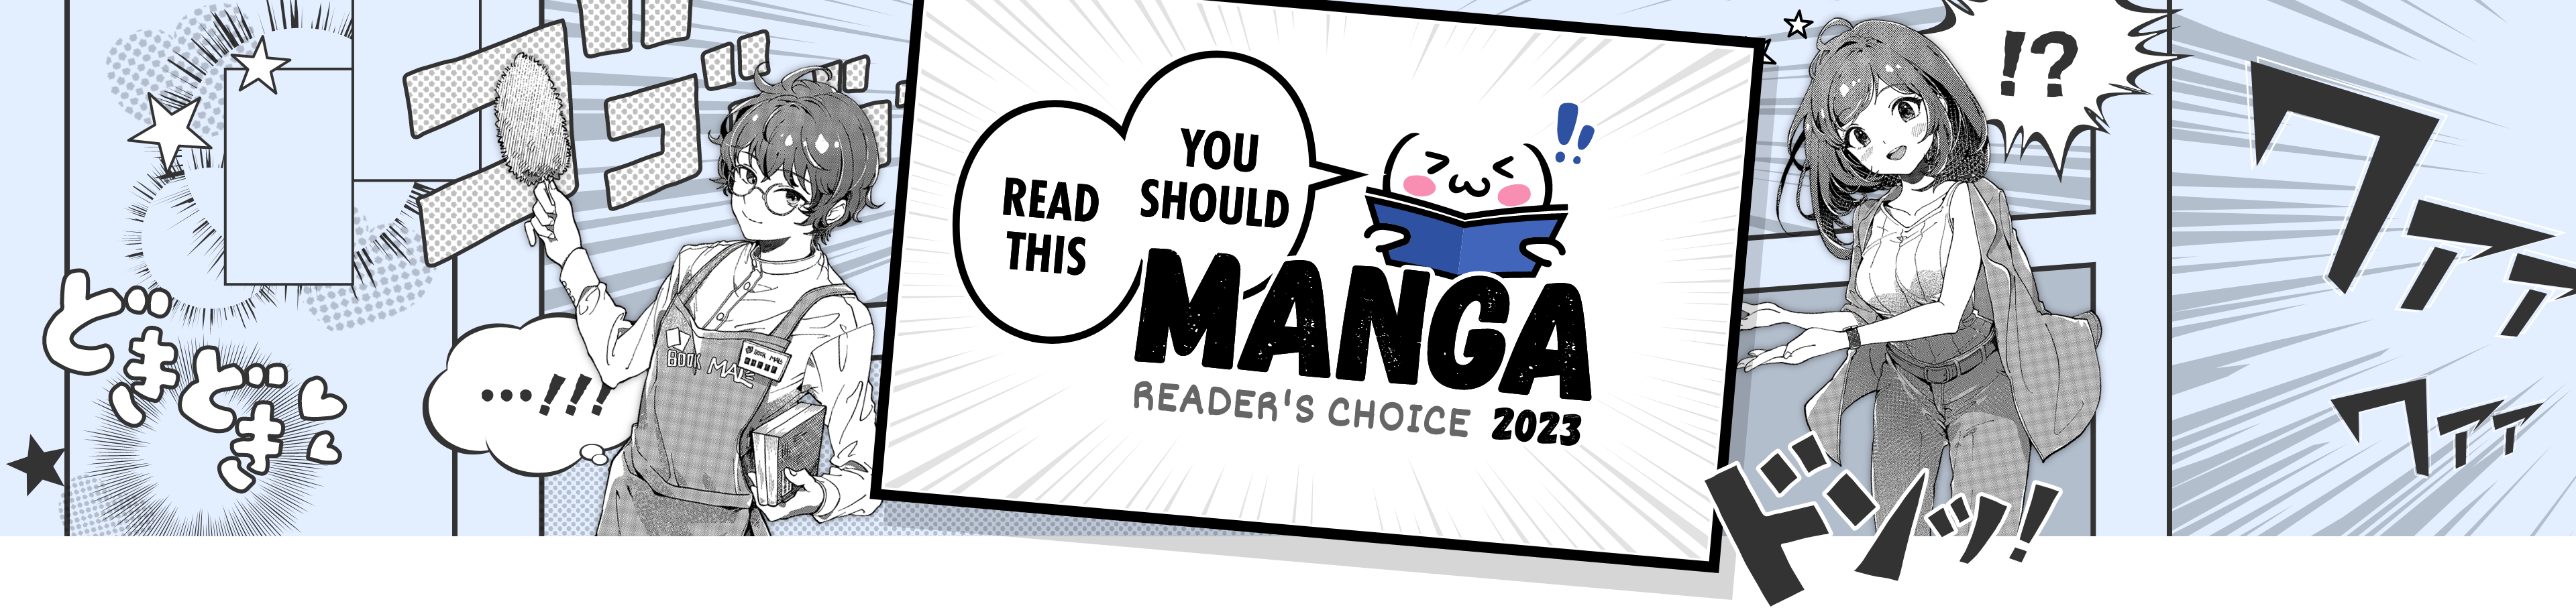 Spy Room Manga Online Free - Manganelo